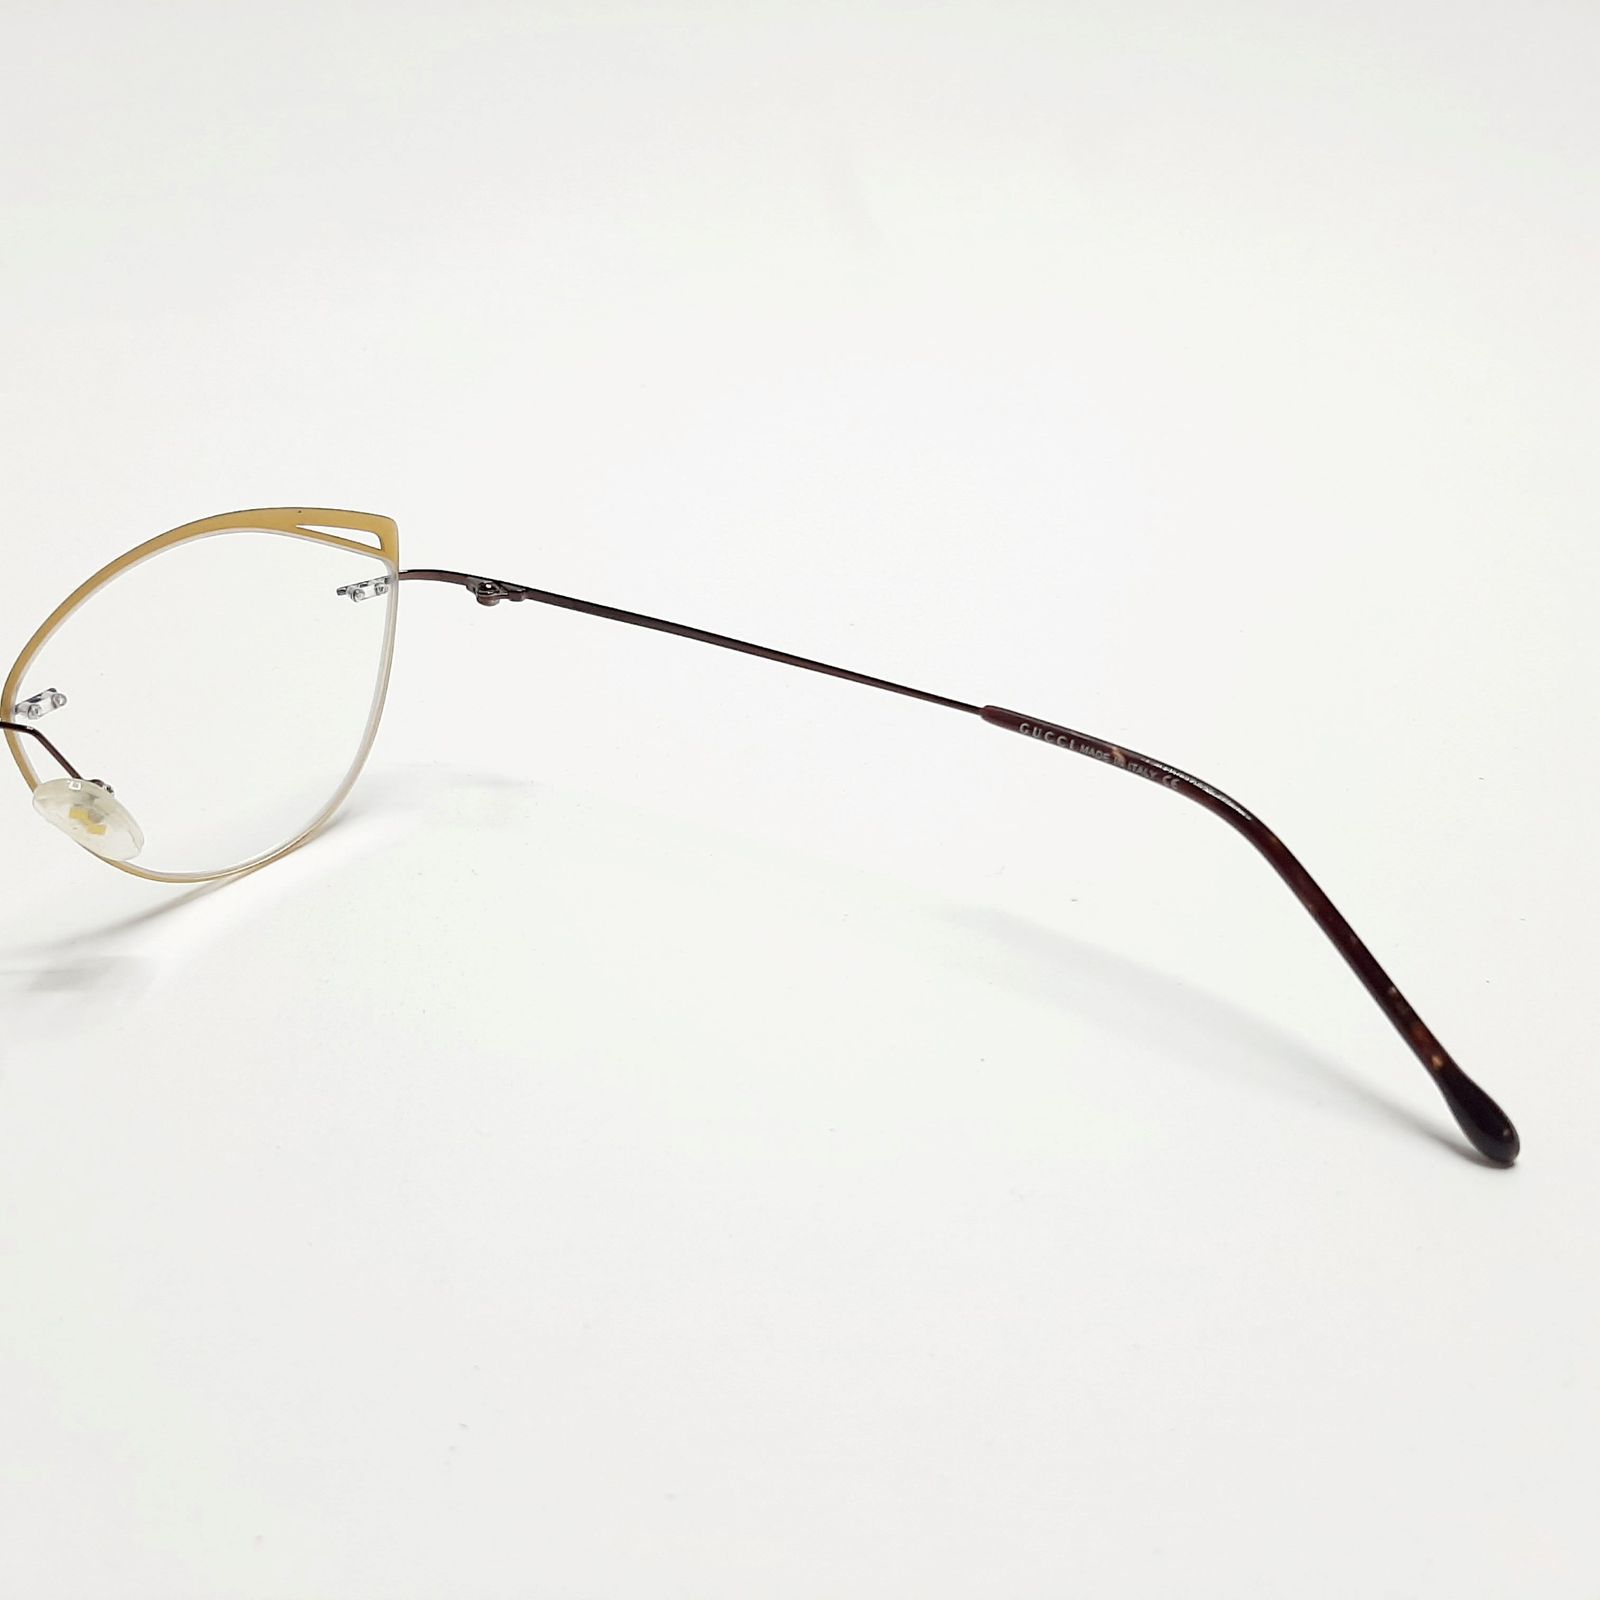 فریم عینک طبی زنانه  مدل GG12166Jc4 -  - 7